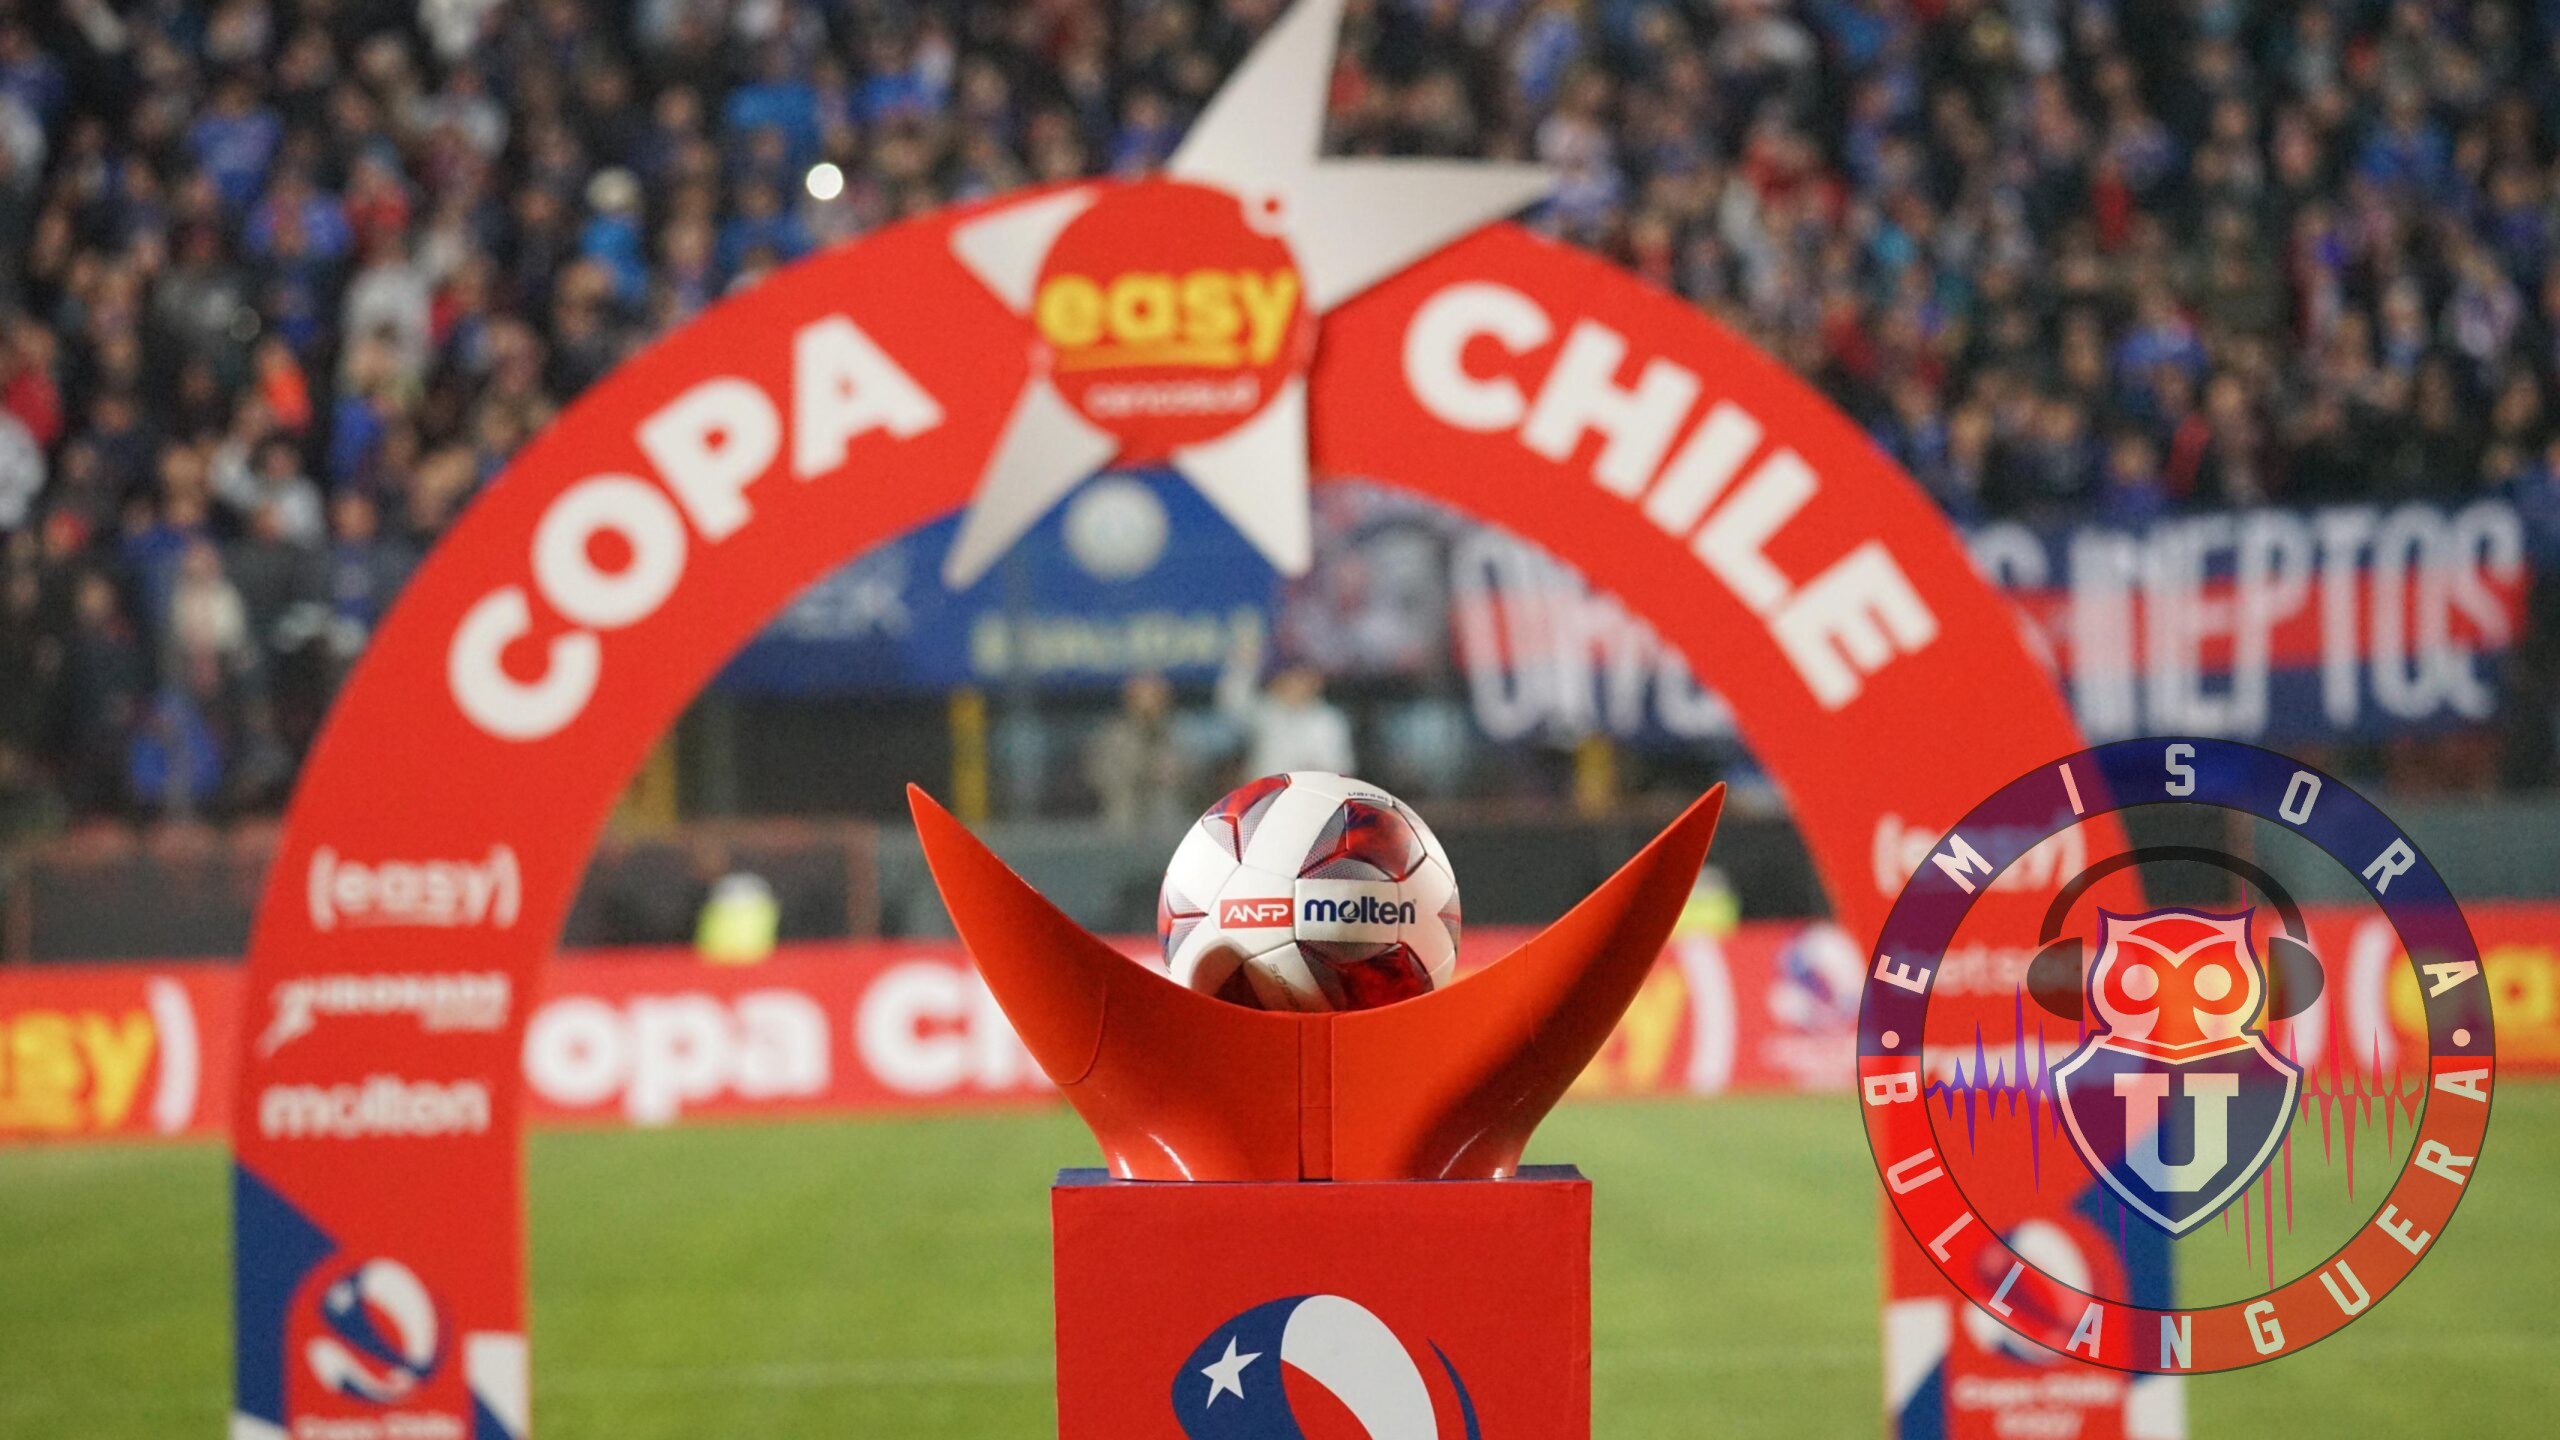 La vez que Universidad de Chile iba a jugar en Torres del Paine por Copa Chile: ¿Qué pasó?